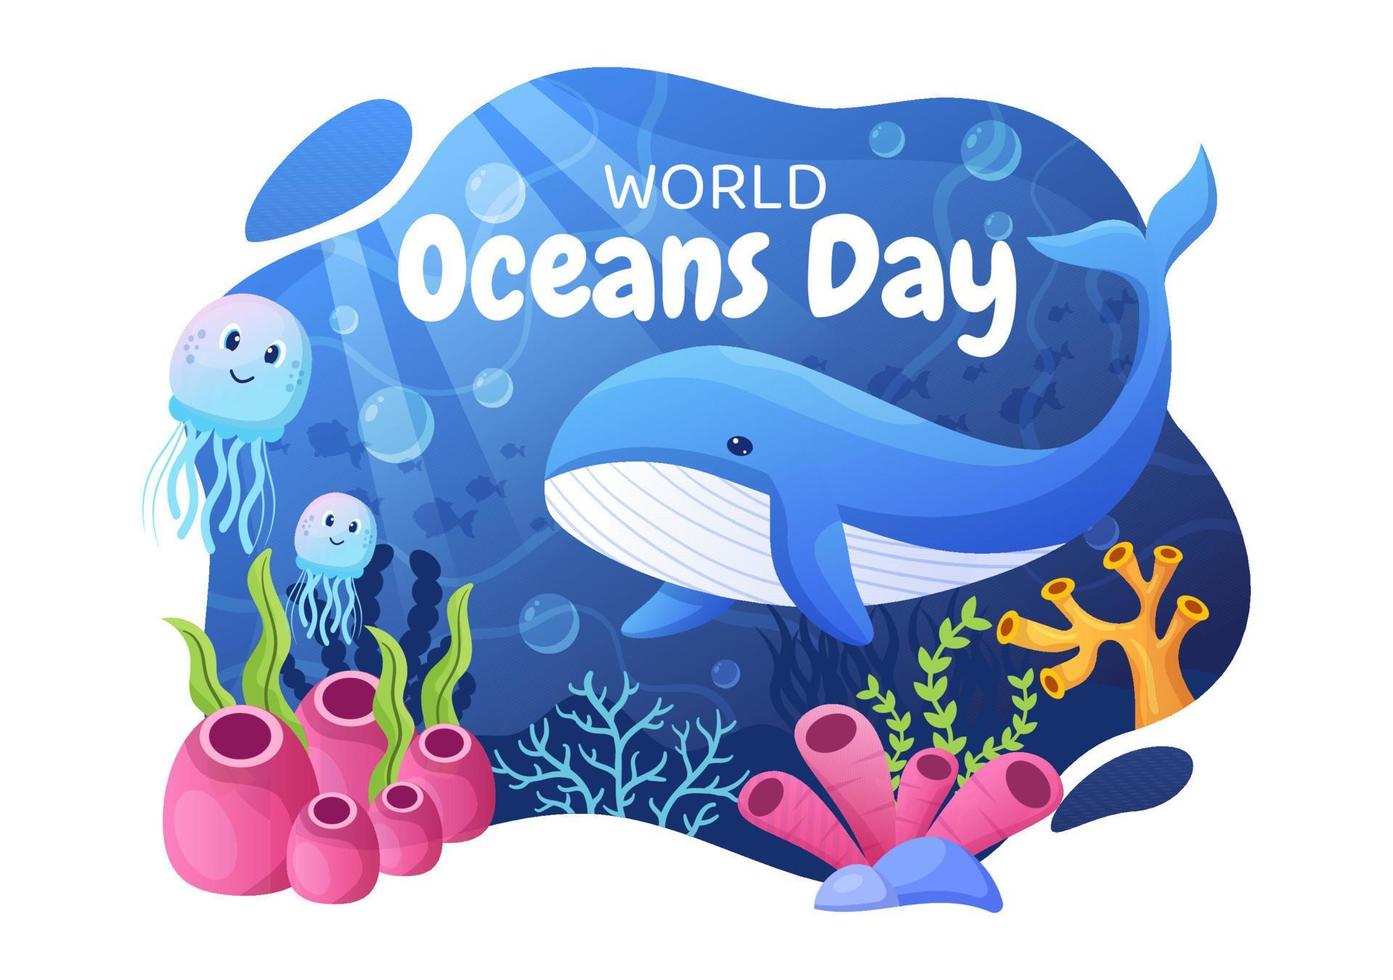 wereld oceaan dag cartoon afbeelding met onderwater landschap, verschillende vis dieren, koralen en zeeplanten gewijd aan het helpen beschermen of behouden vector